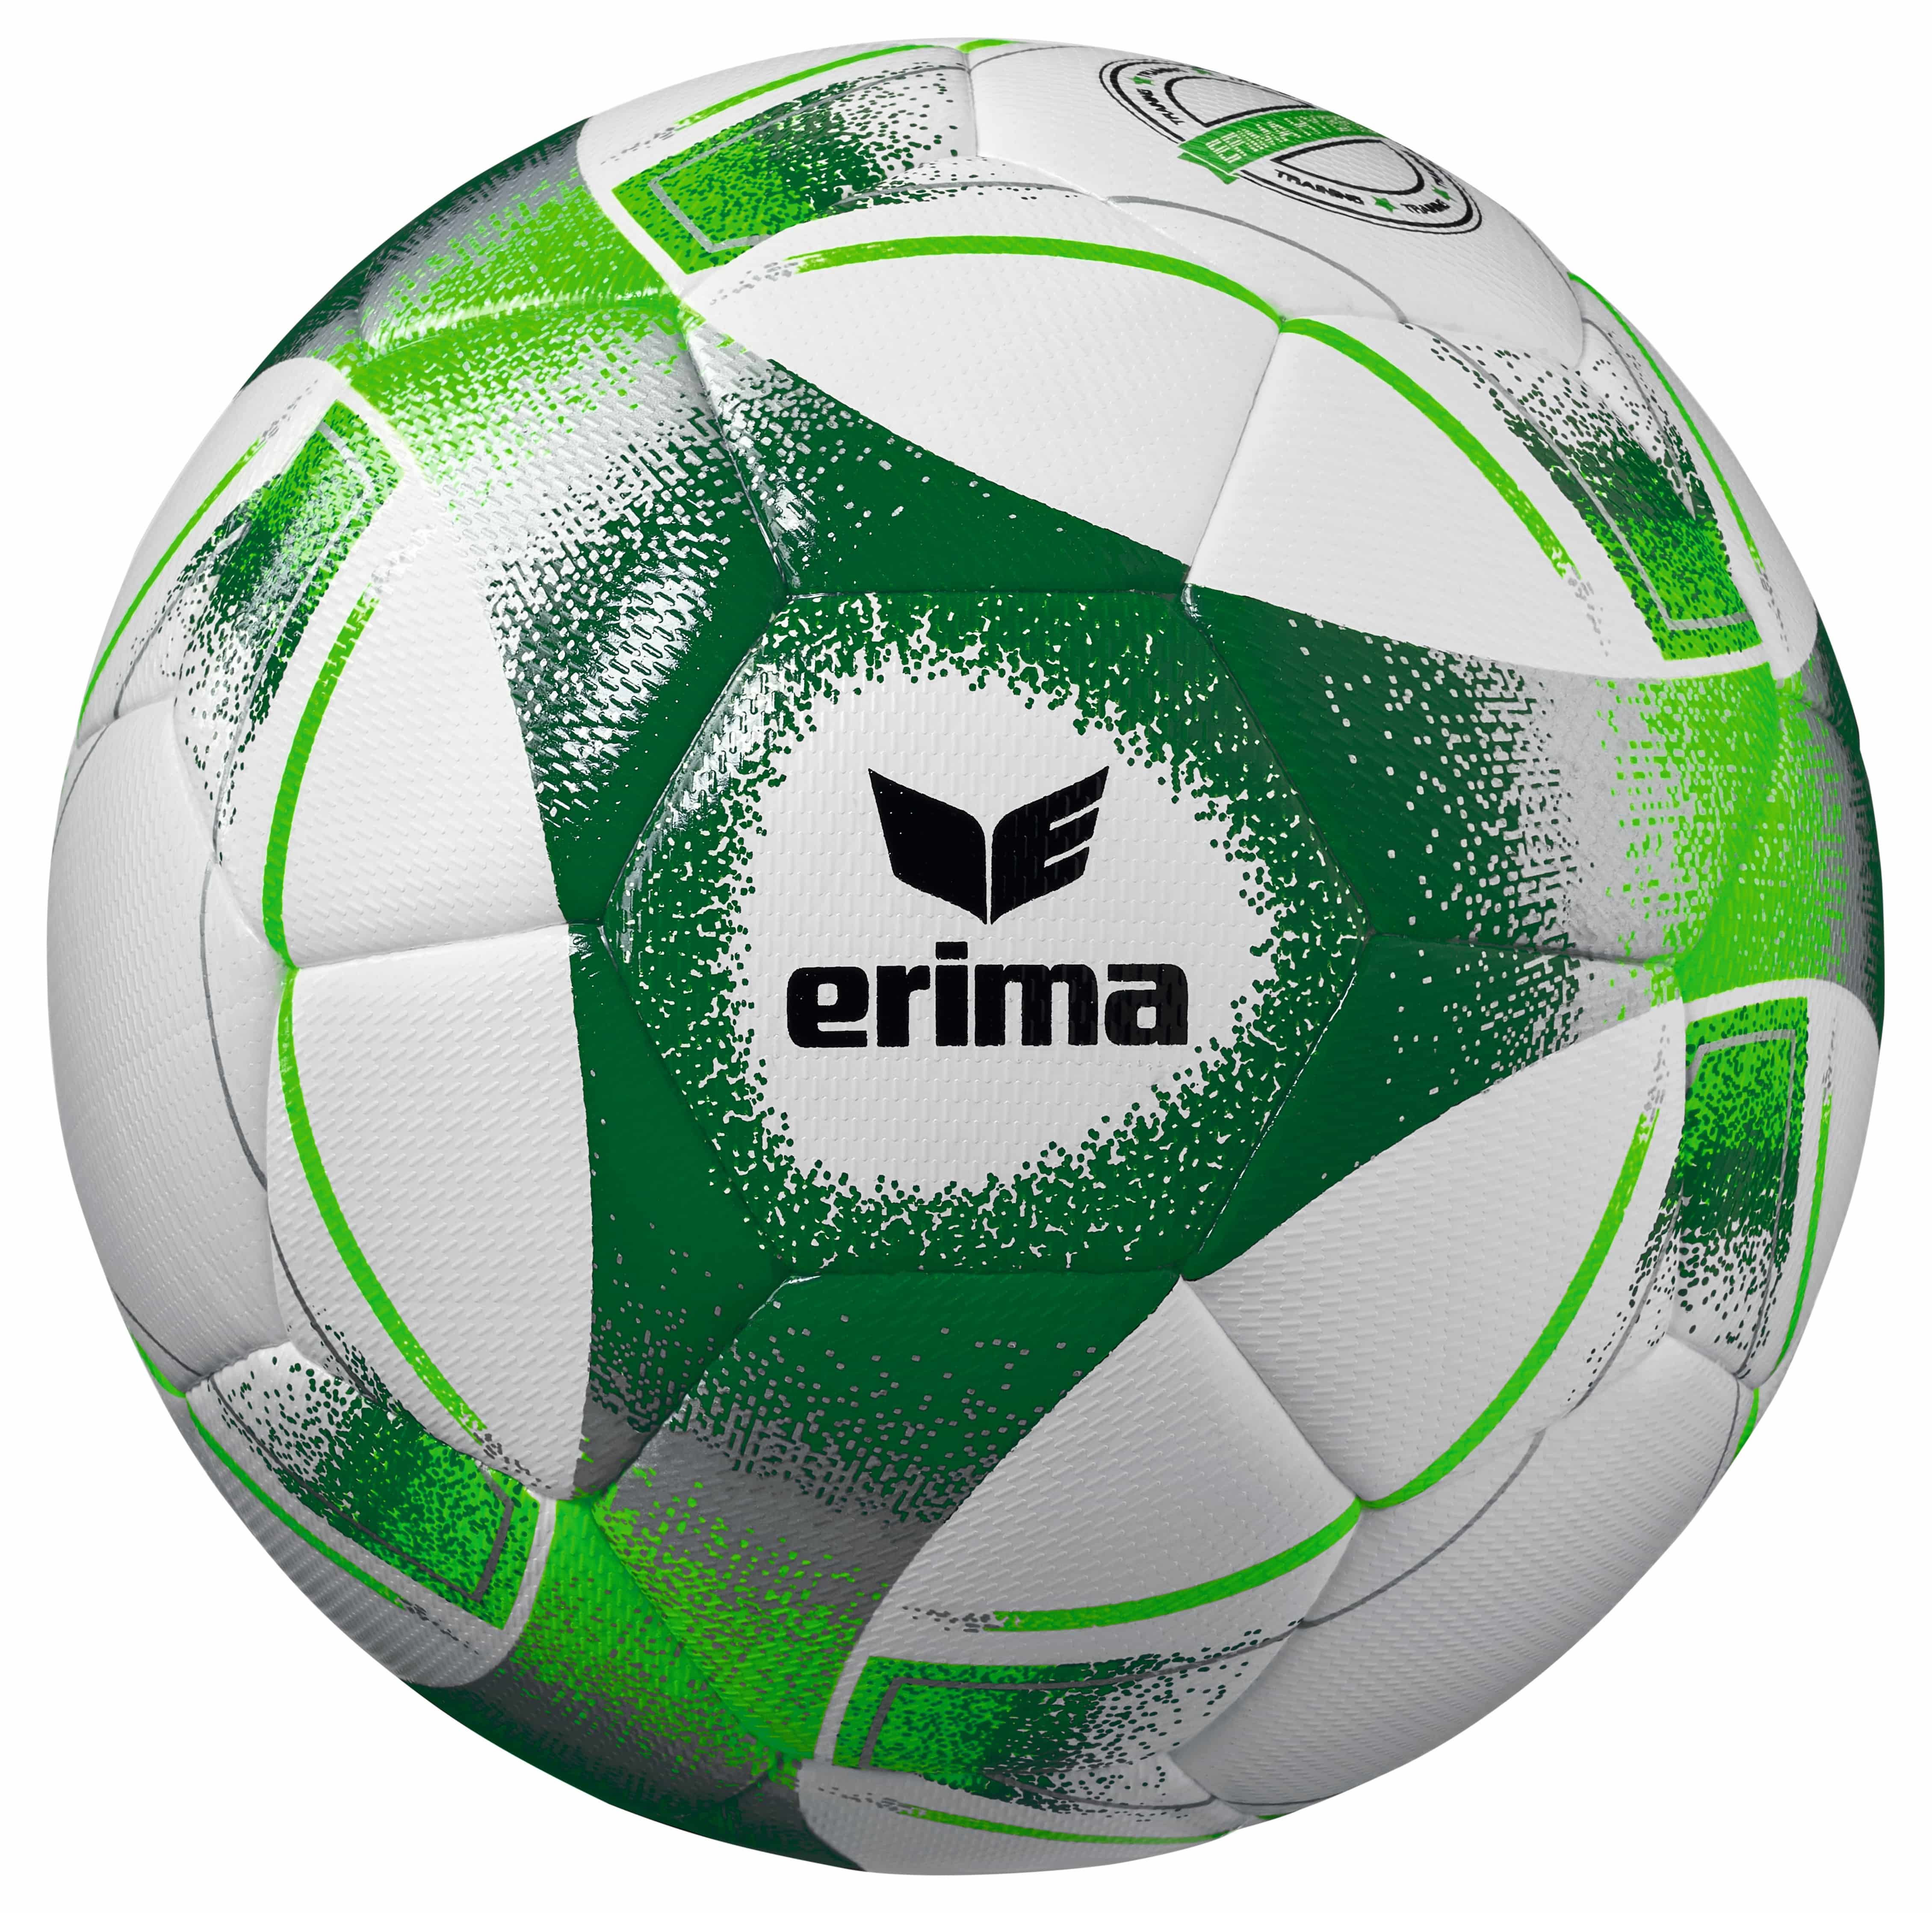 Erima Fußball Hybrid Training 2.0 grün